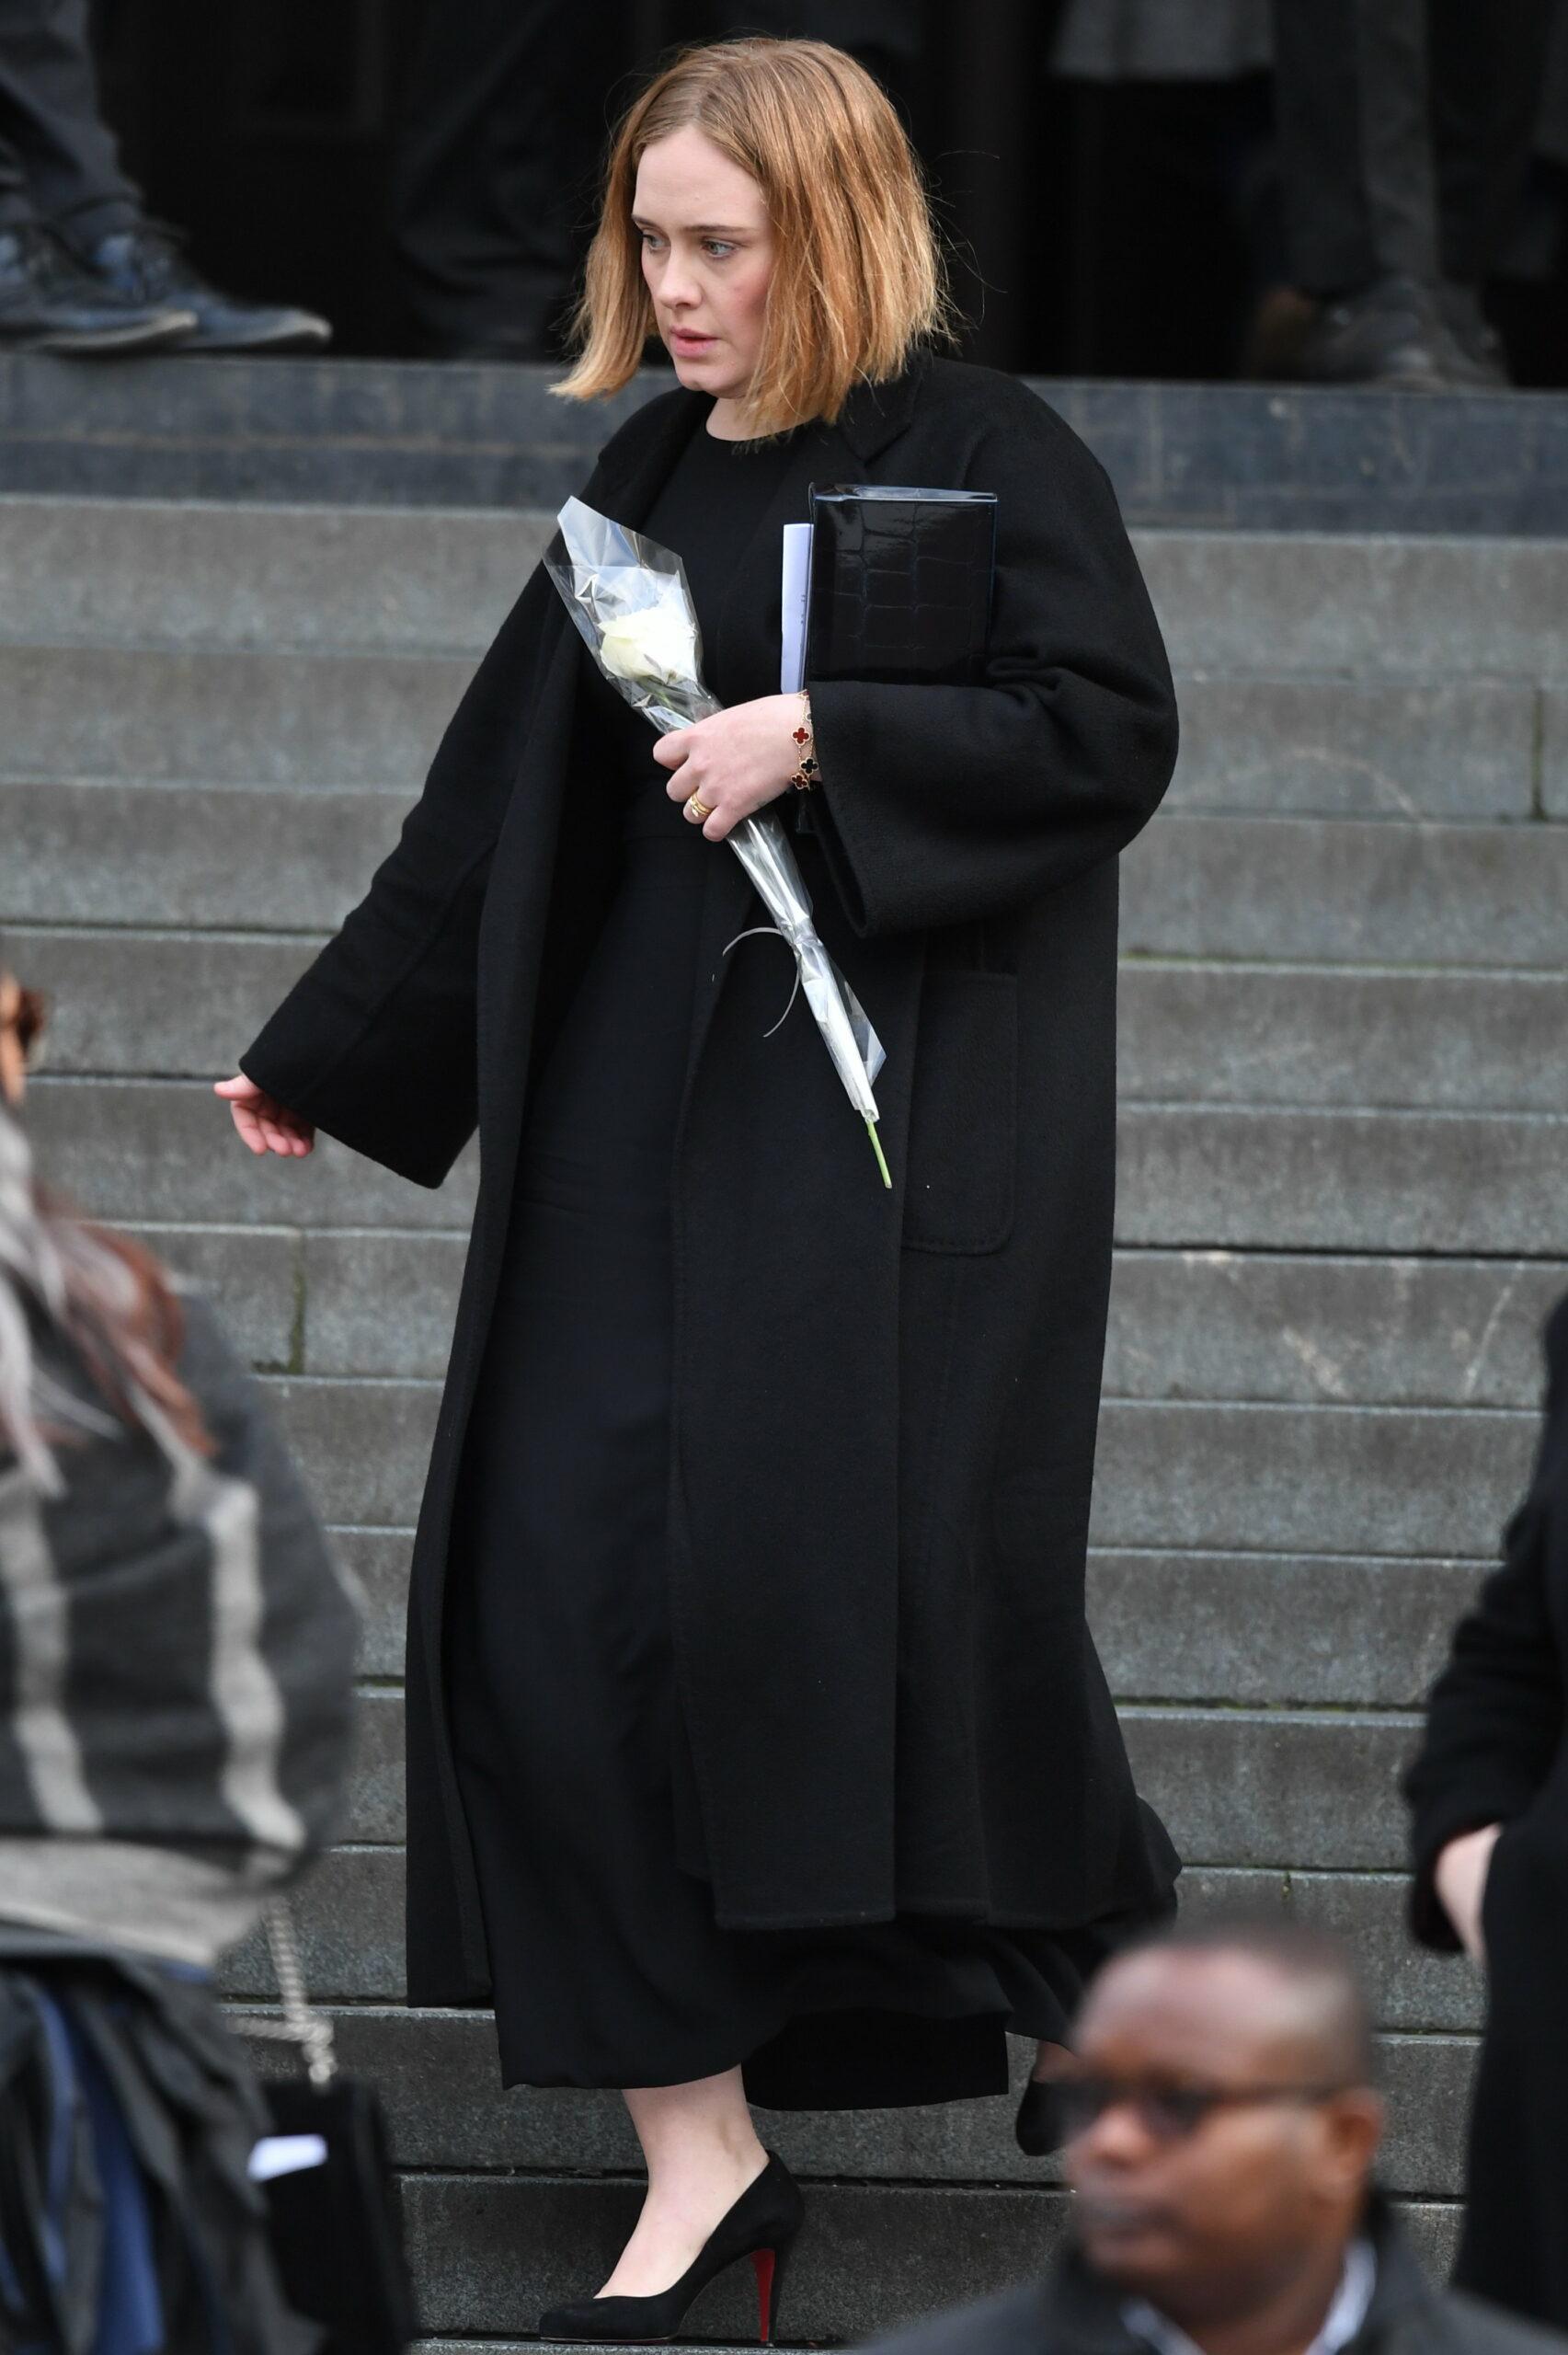 Singer Adele seen alongside the Royal Family attending the Grenfell Tower Memorial Service